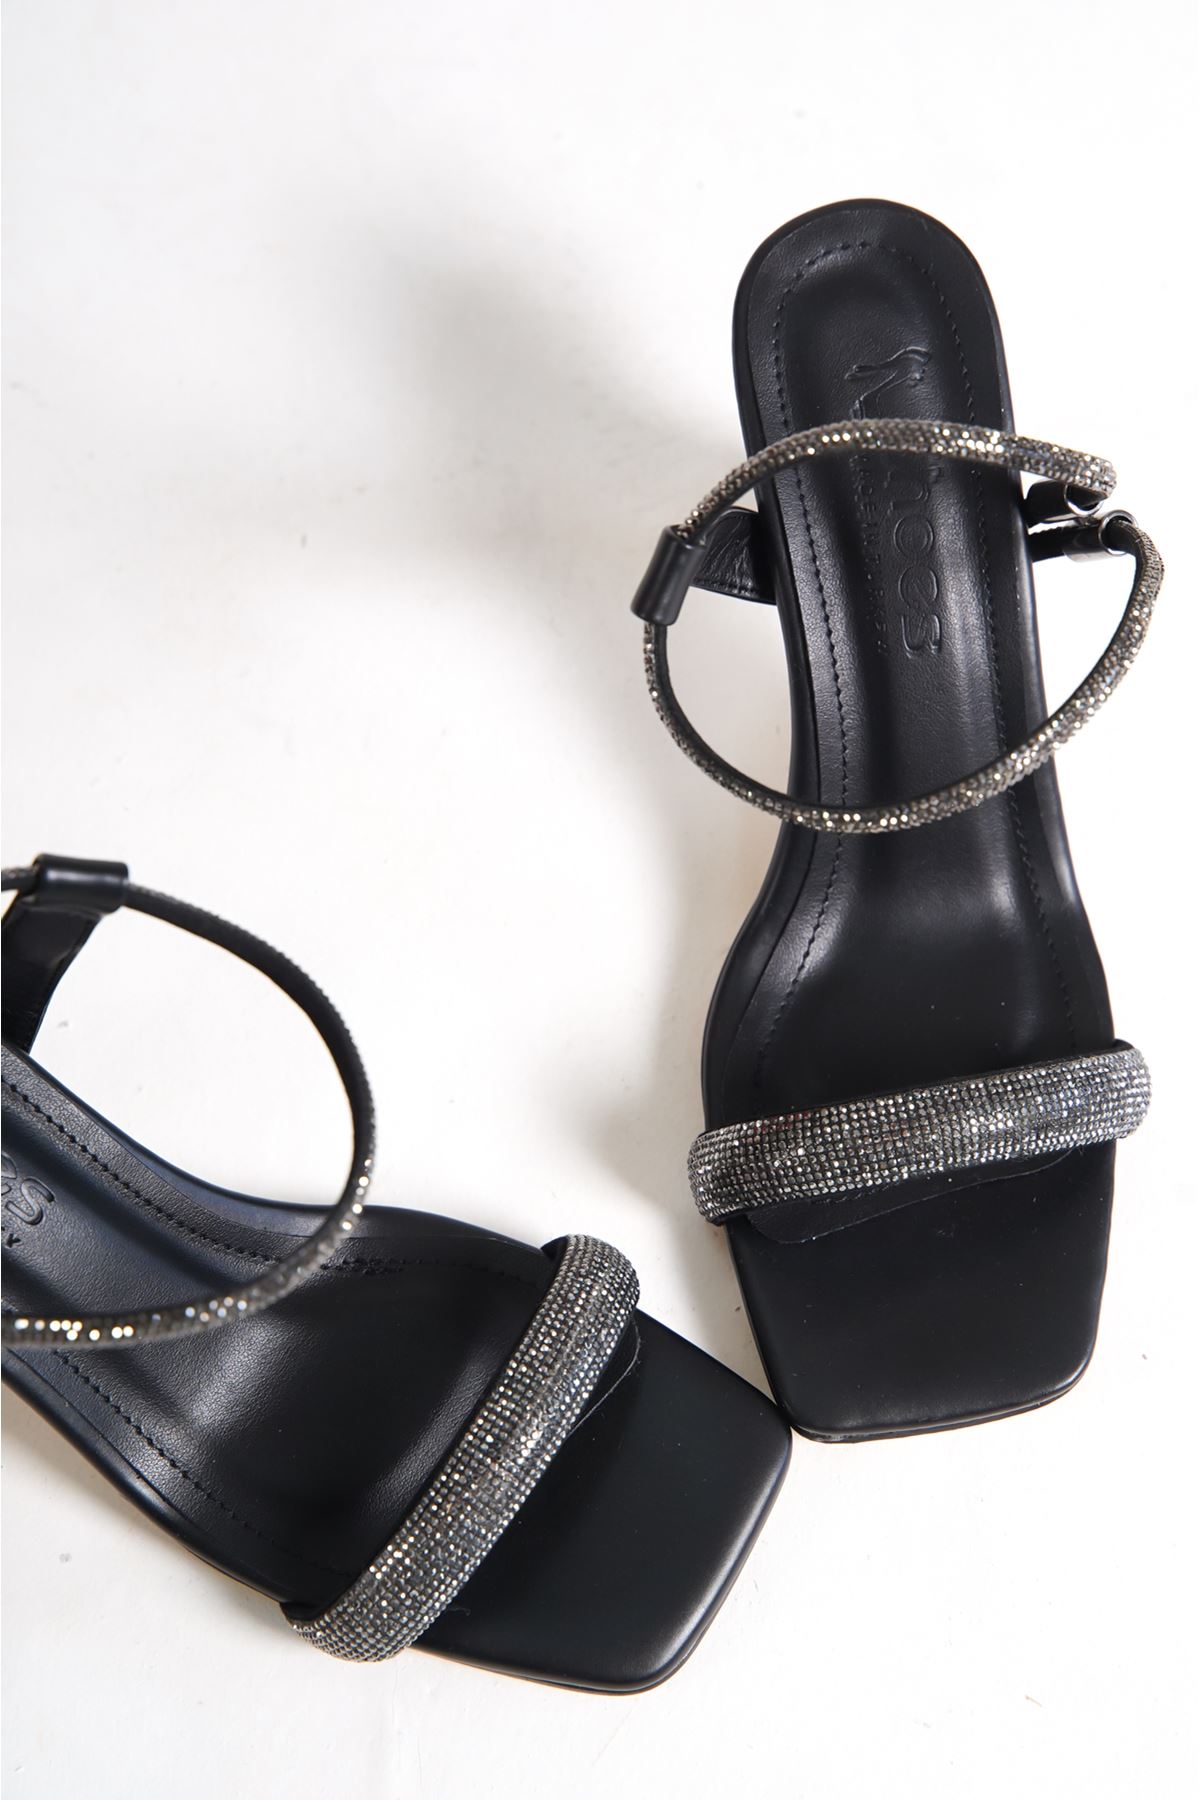 Boris Siyah Taşlı Topuklu Kadın Ayakkabı